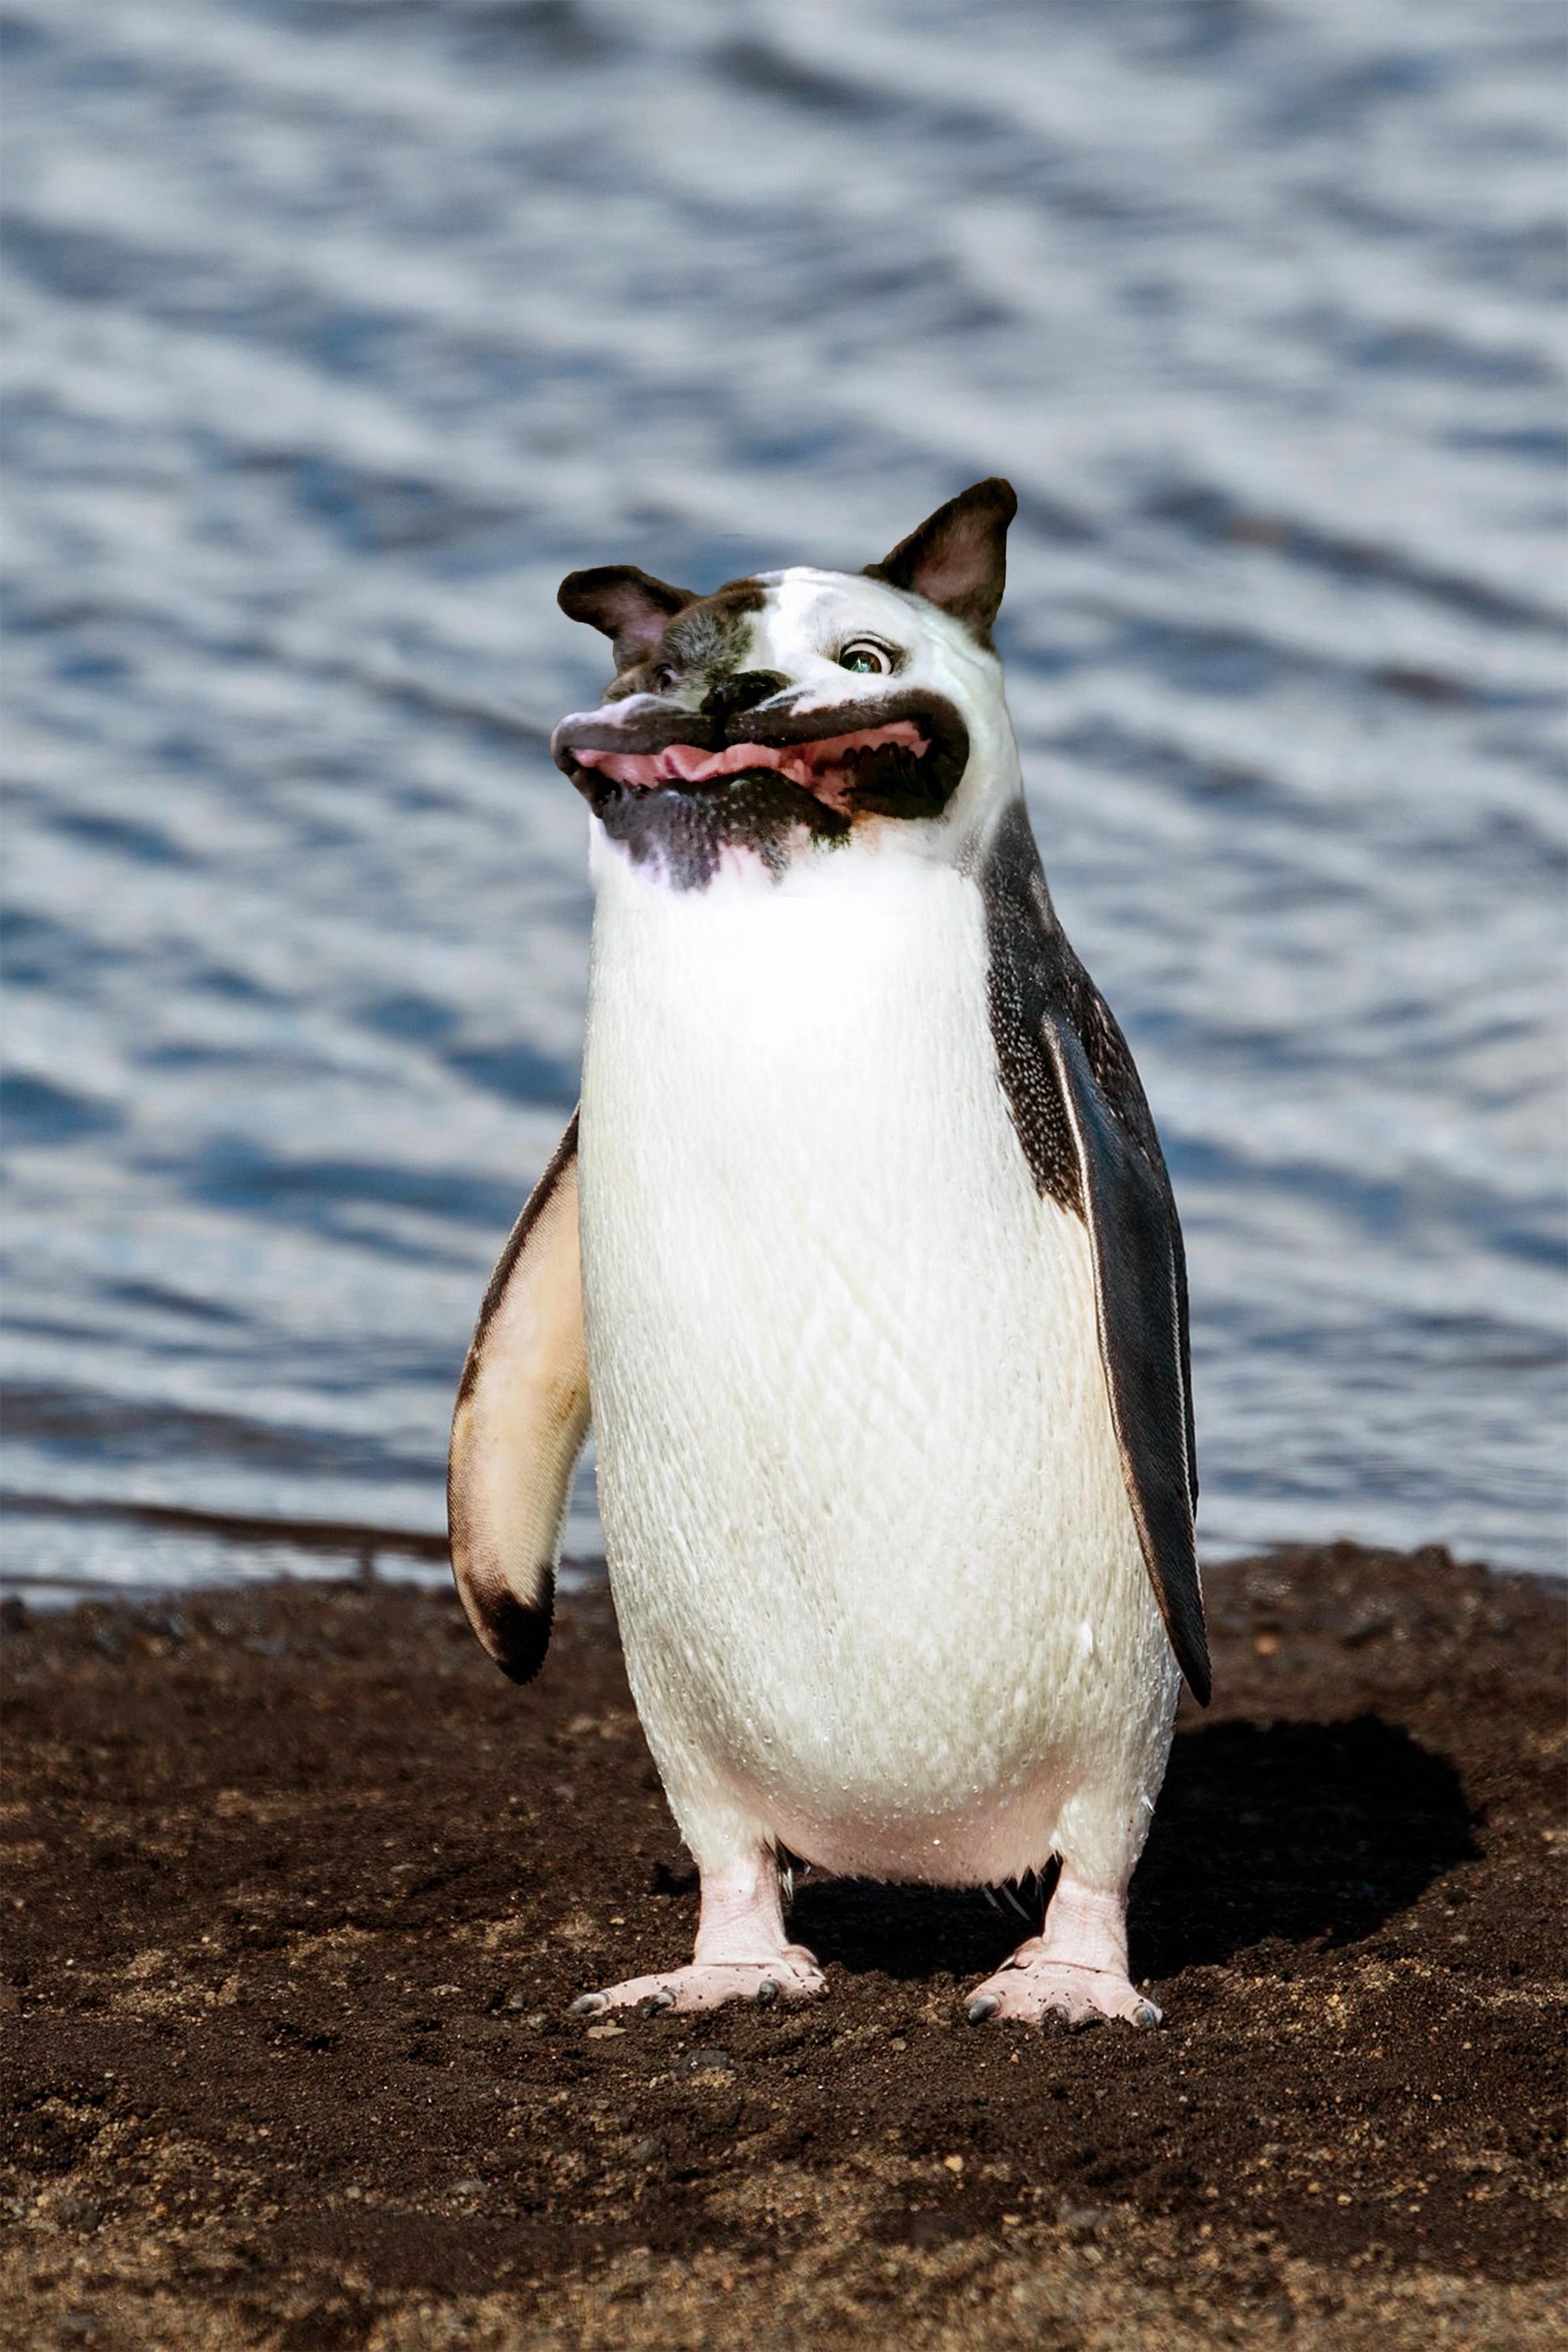 I photoshopped a dog's head onto a penguin